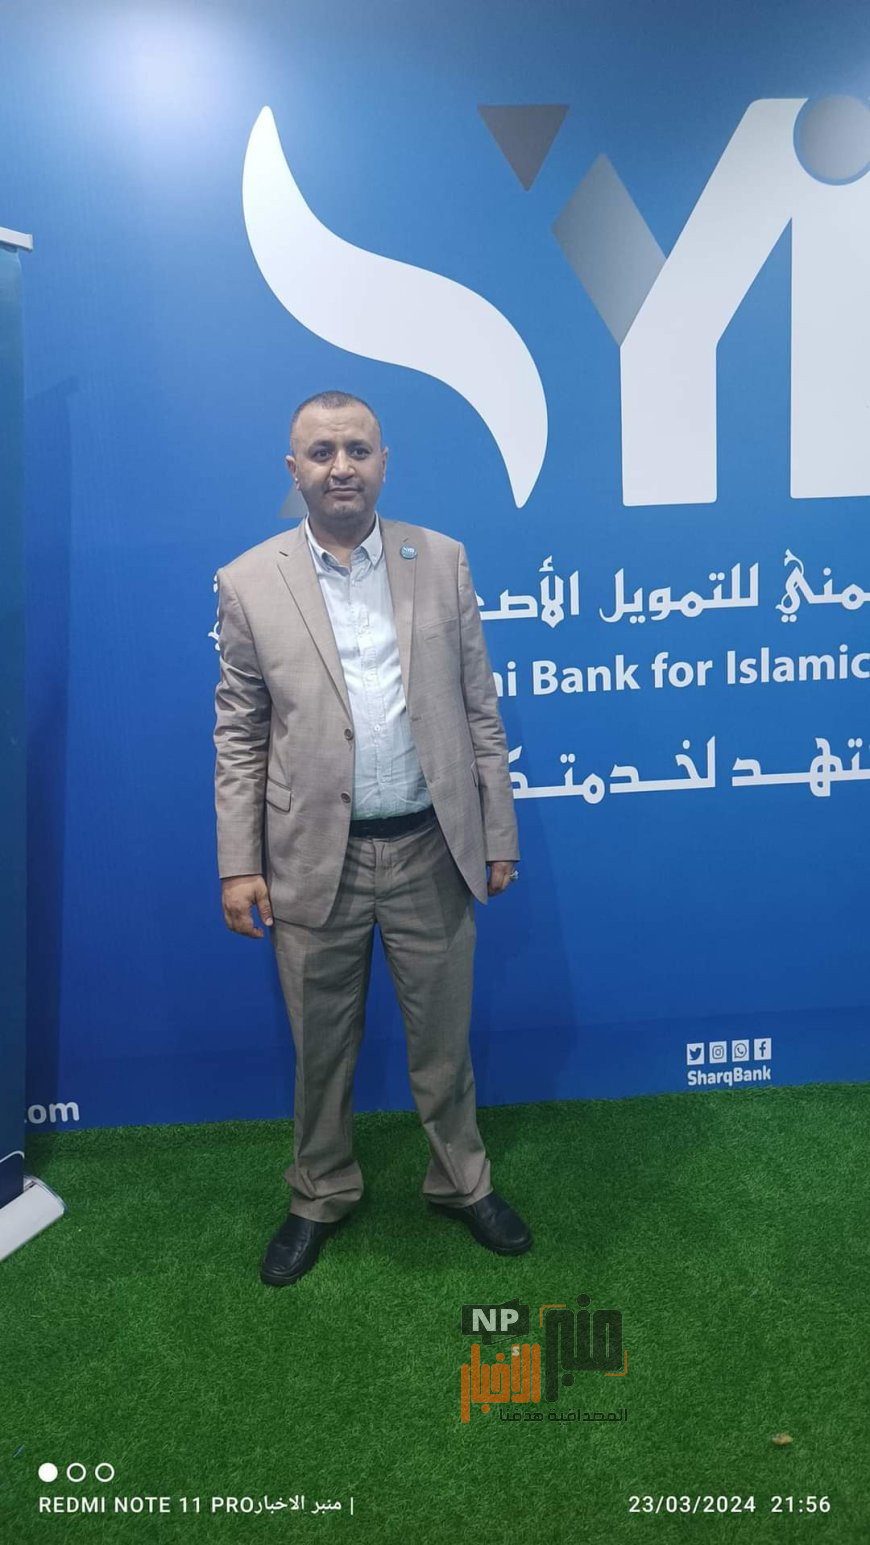 حصري لموقع منبر الاخبار..تصريح هام من المدير التنفيذي لبنك الشرق اليمني للتمويل الأصغر (تعرف عليه)